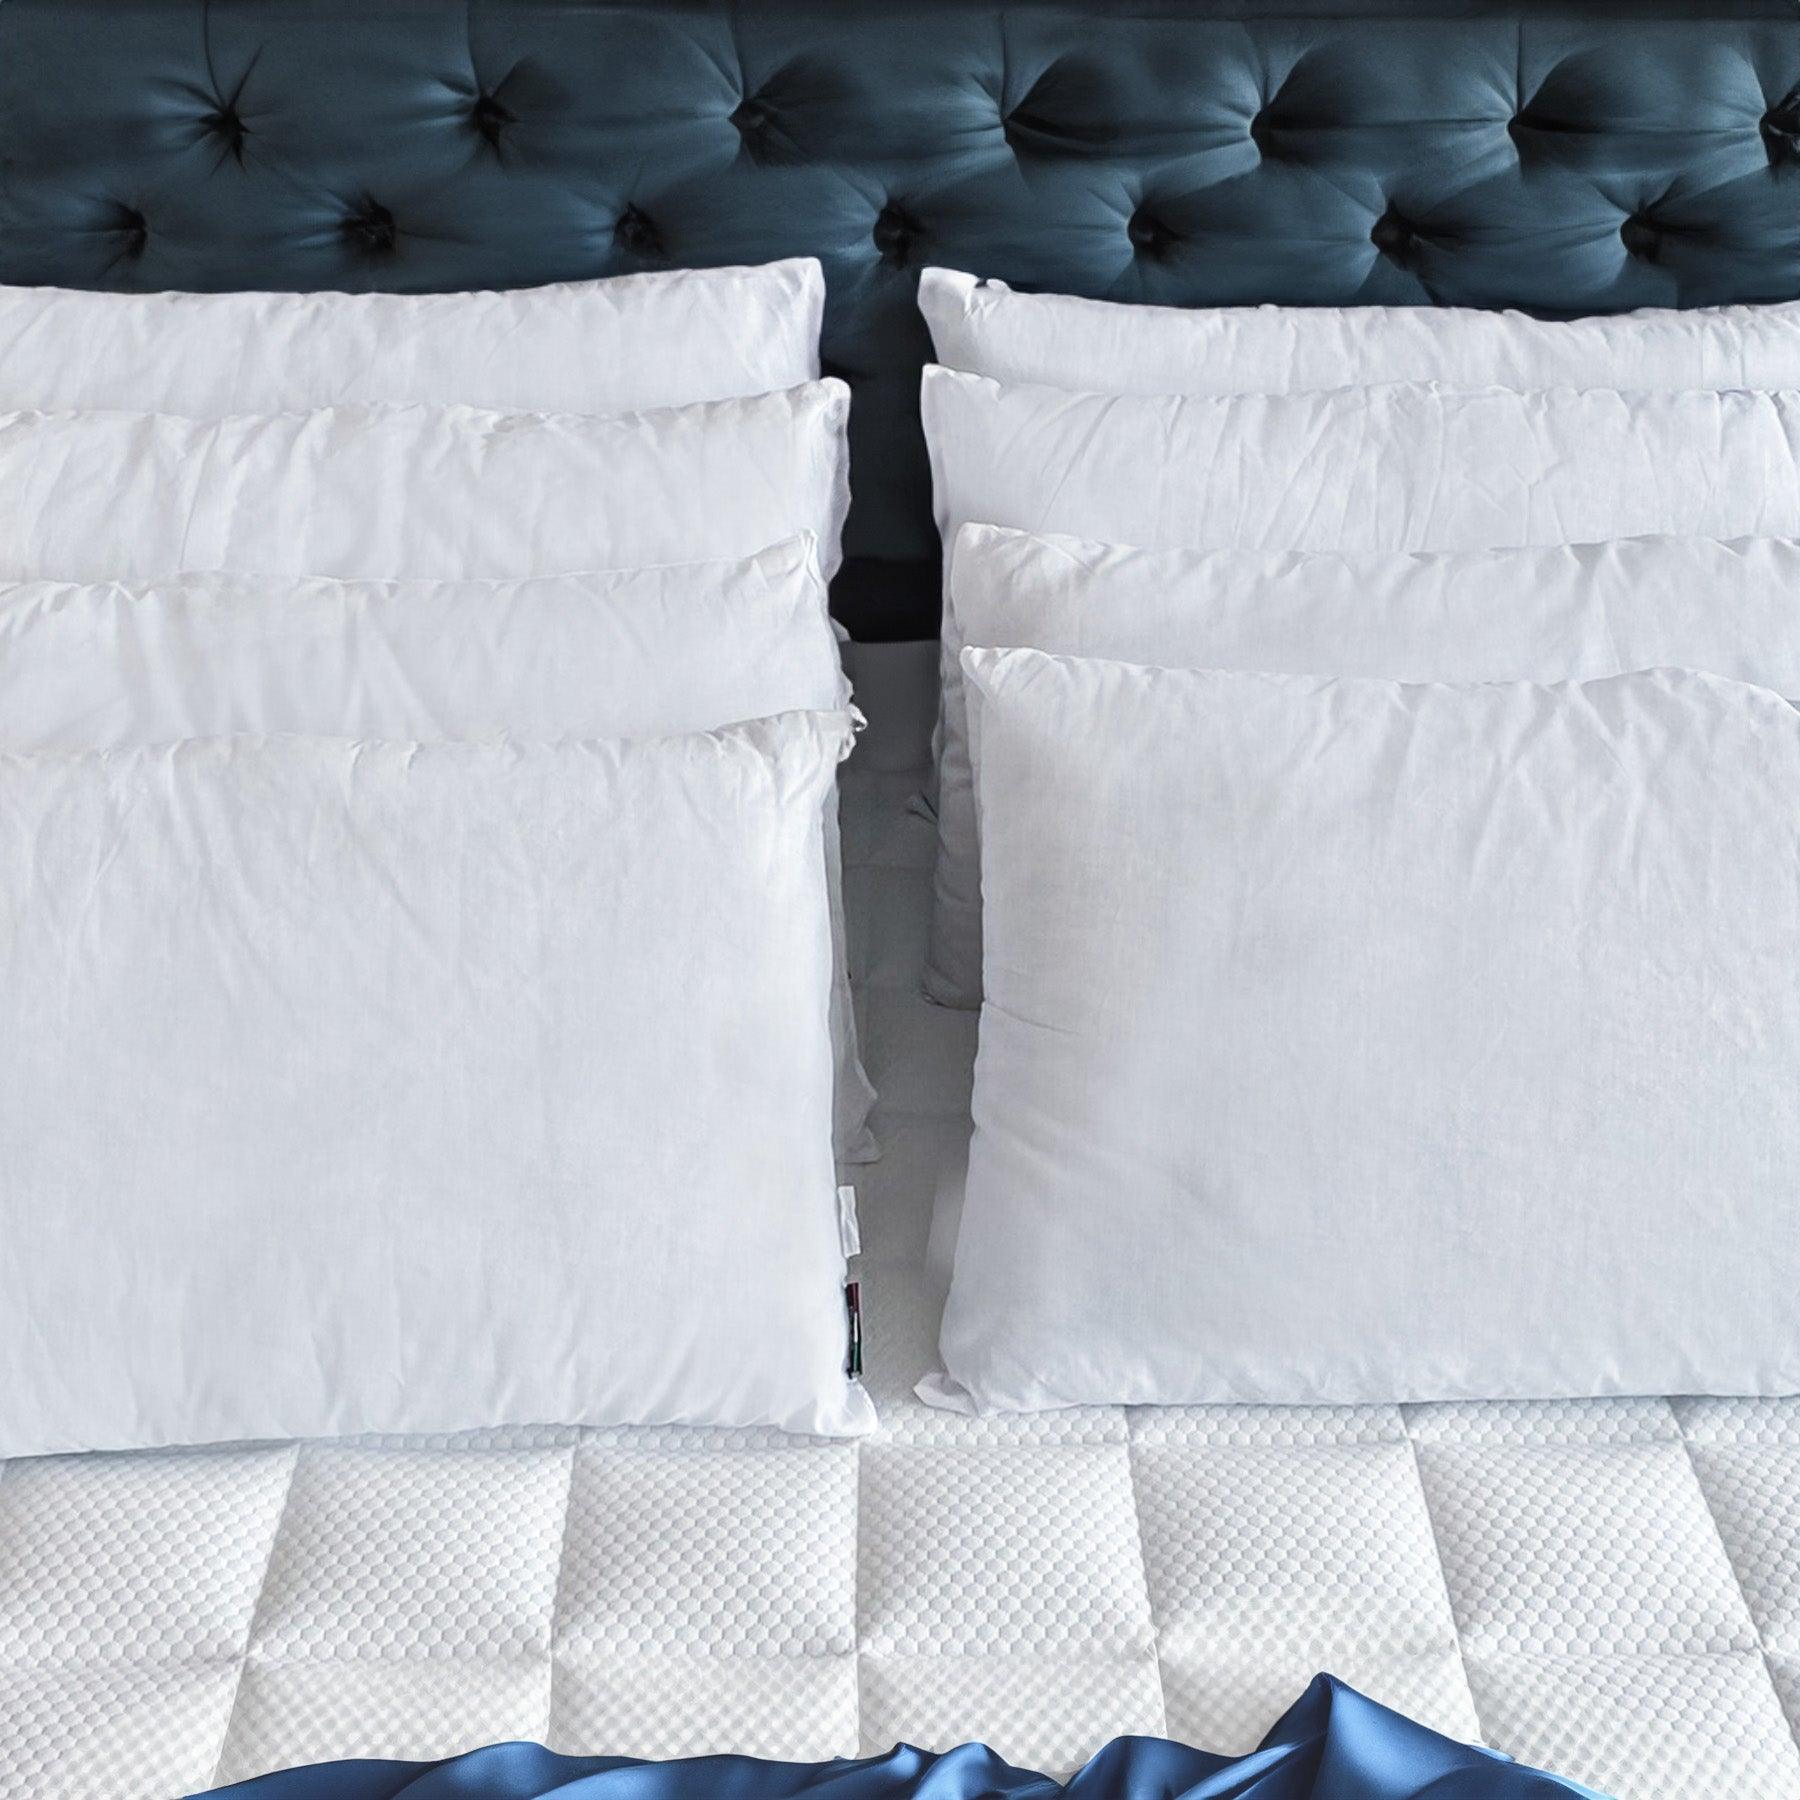 Vista frontale dei cuscini letto in fibra Tiziano di Beliamo, che evidenzia la loro eleganza e la qualità dei materiali